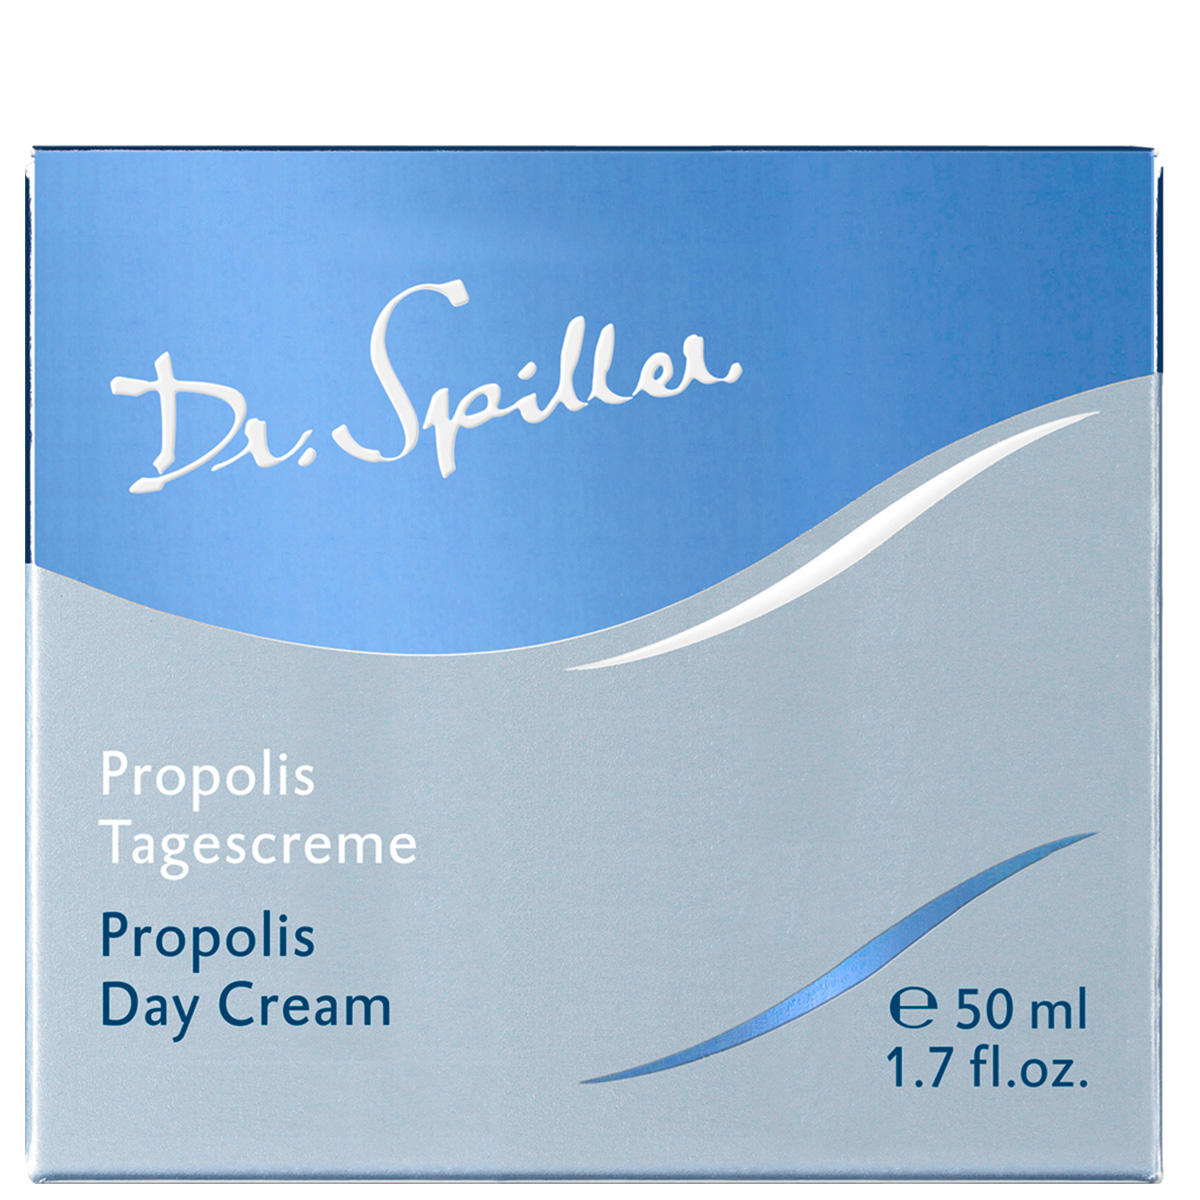 Dr. Spiller Biomimetic SkinCare Propolis Dagcrème 50 ml - 3